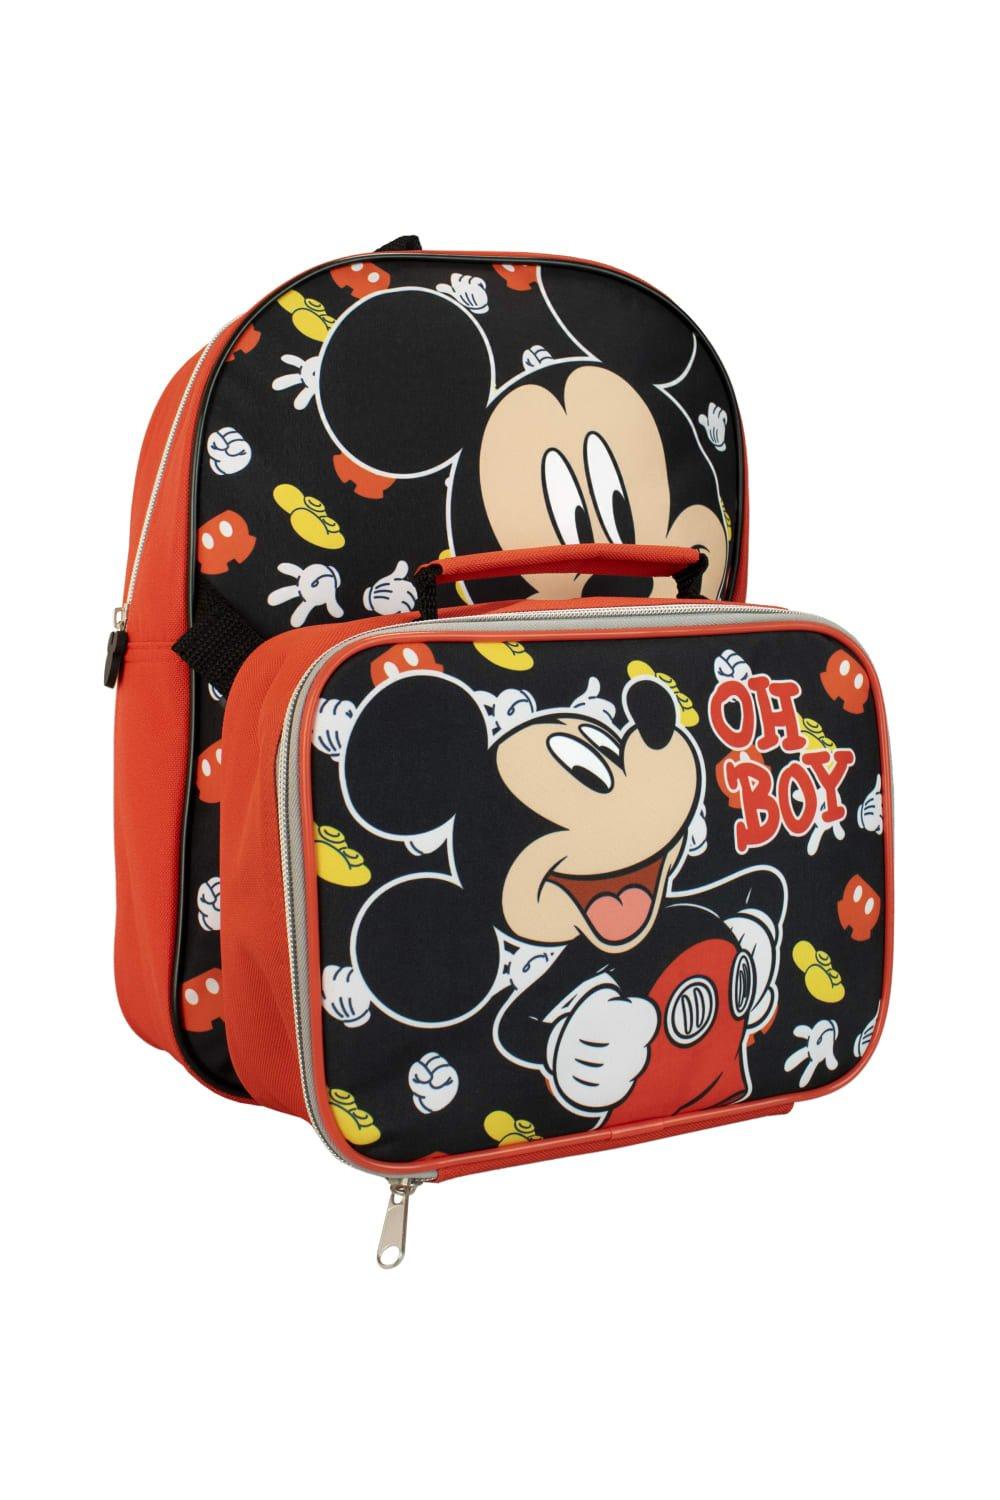 сумка для катушек большая 21 18 5 8см freeway Детский набор: рюкзак и сумка для завтрака с Микки Маусом Disney, черный